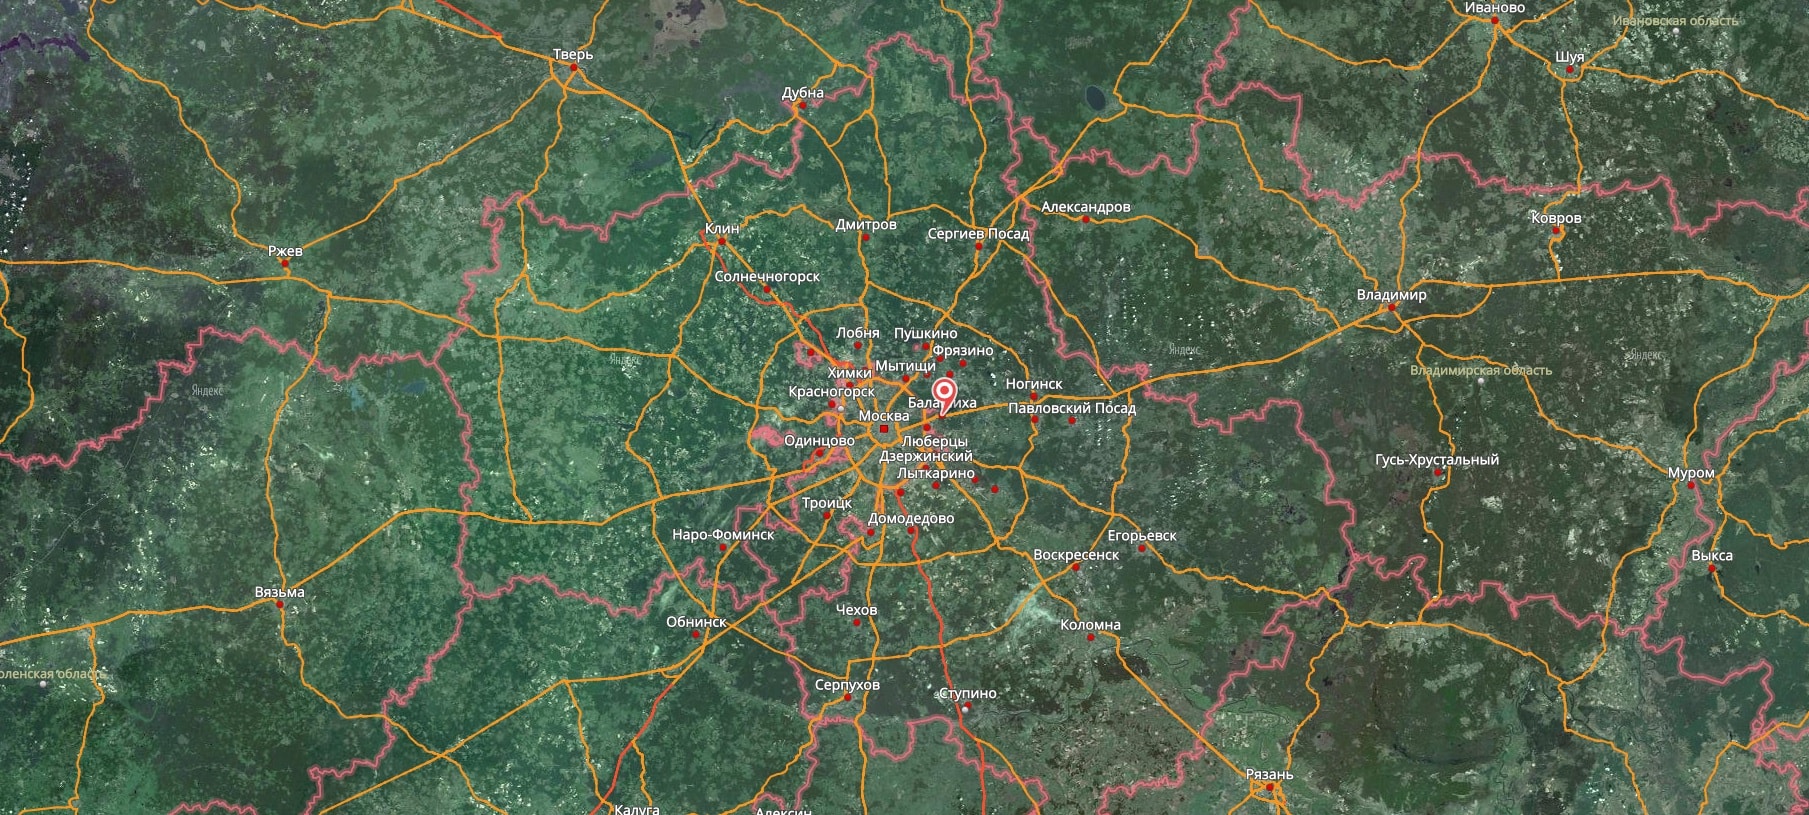 Карта Московской области со спутника